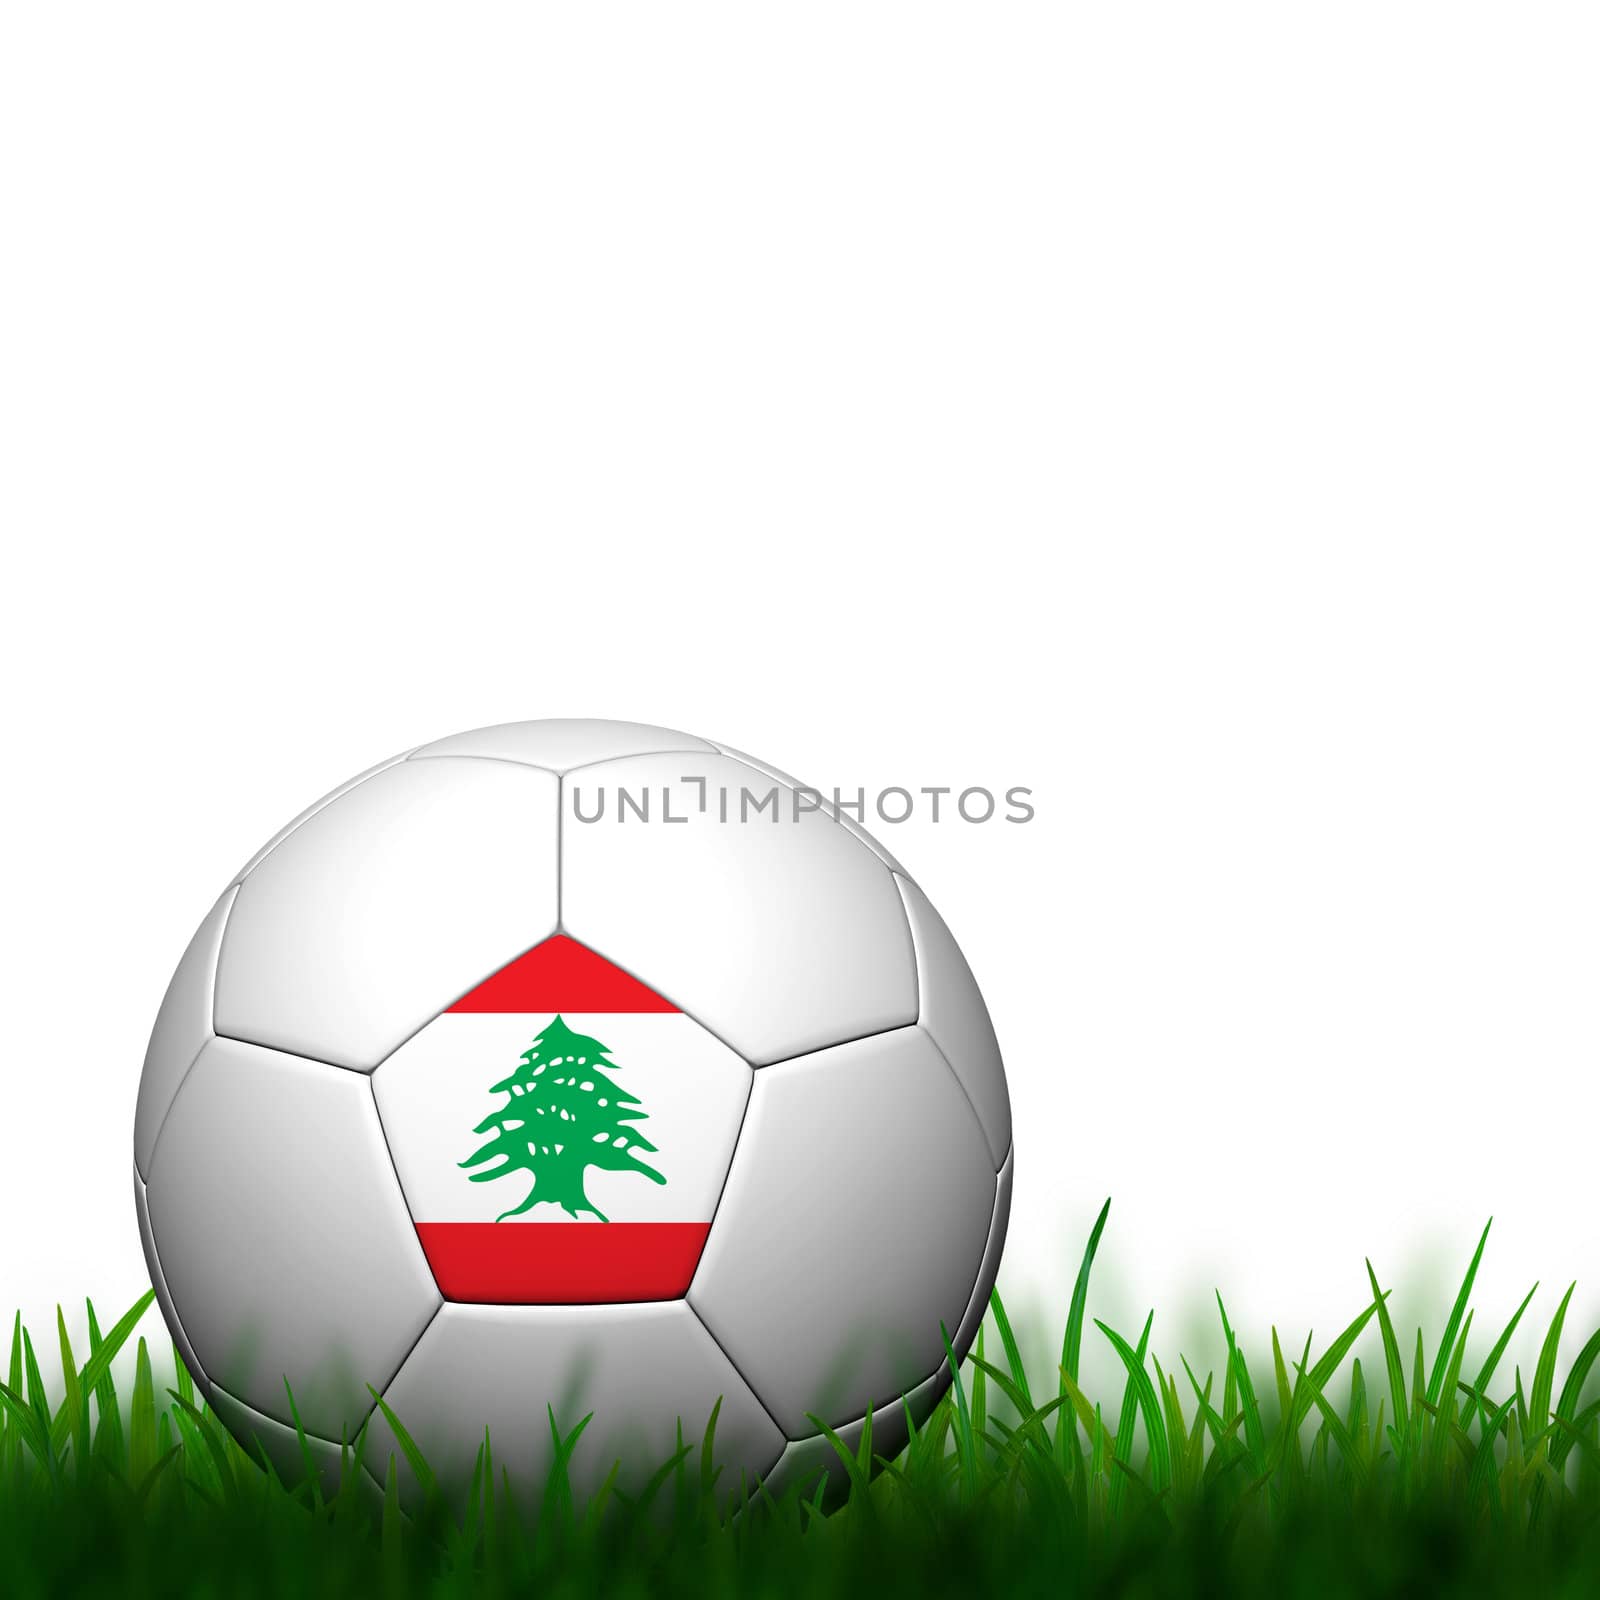 3D Football Lebanon Flag Patter in green grass on white backgrou by jakgree